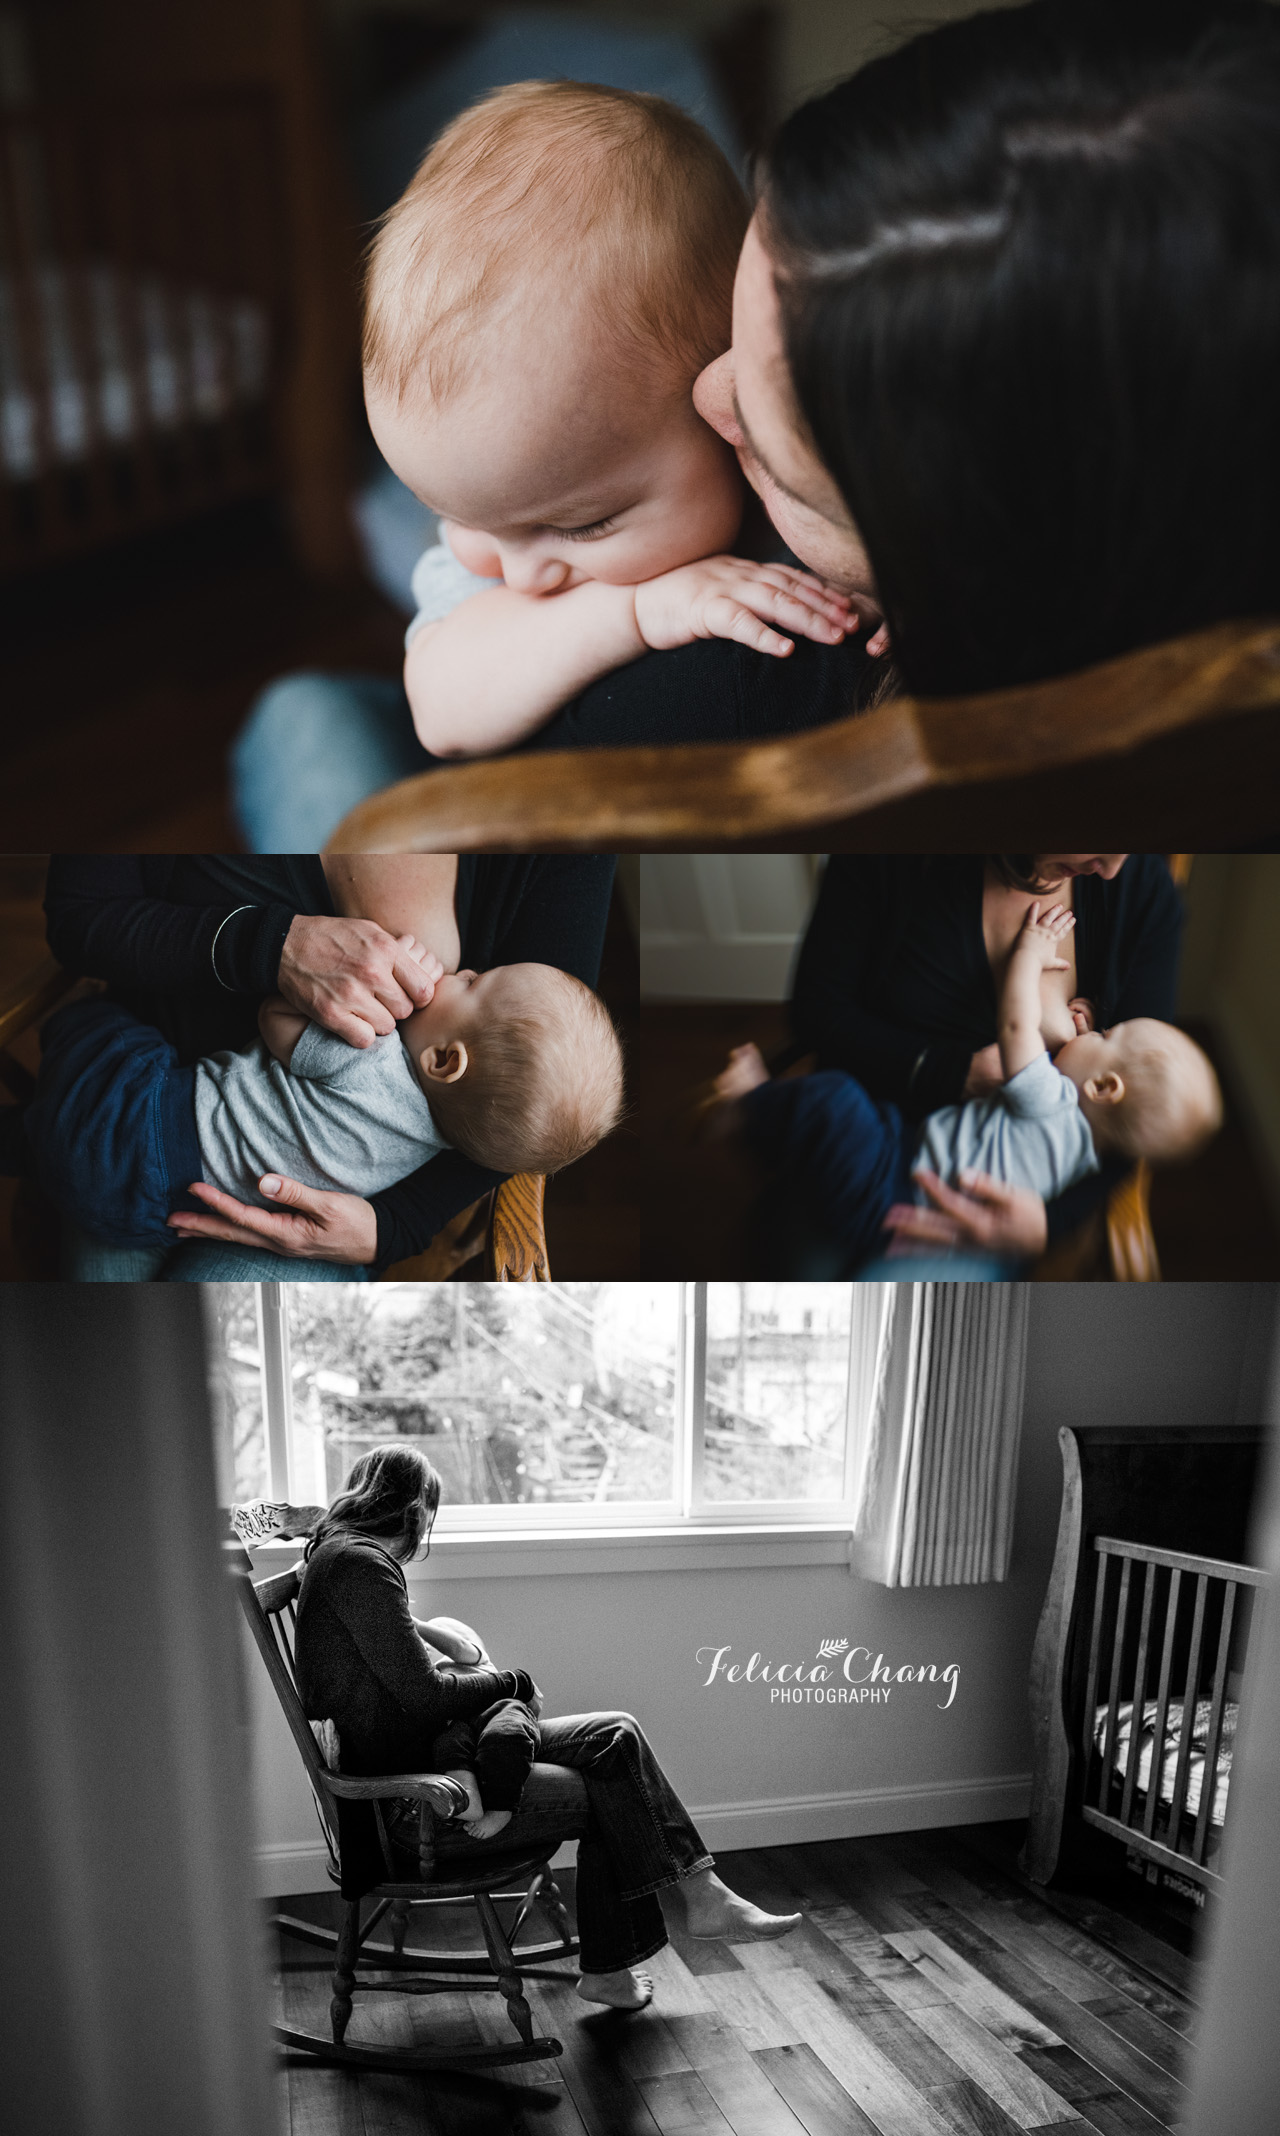 vancouver breastfeeding photos | Felicia Chang Photography